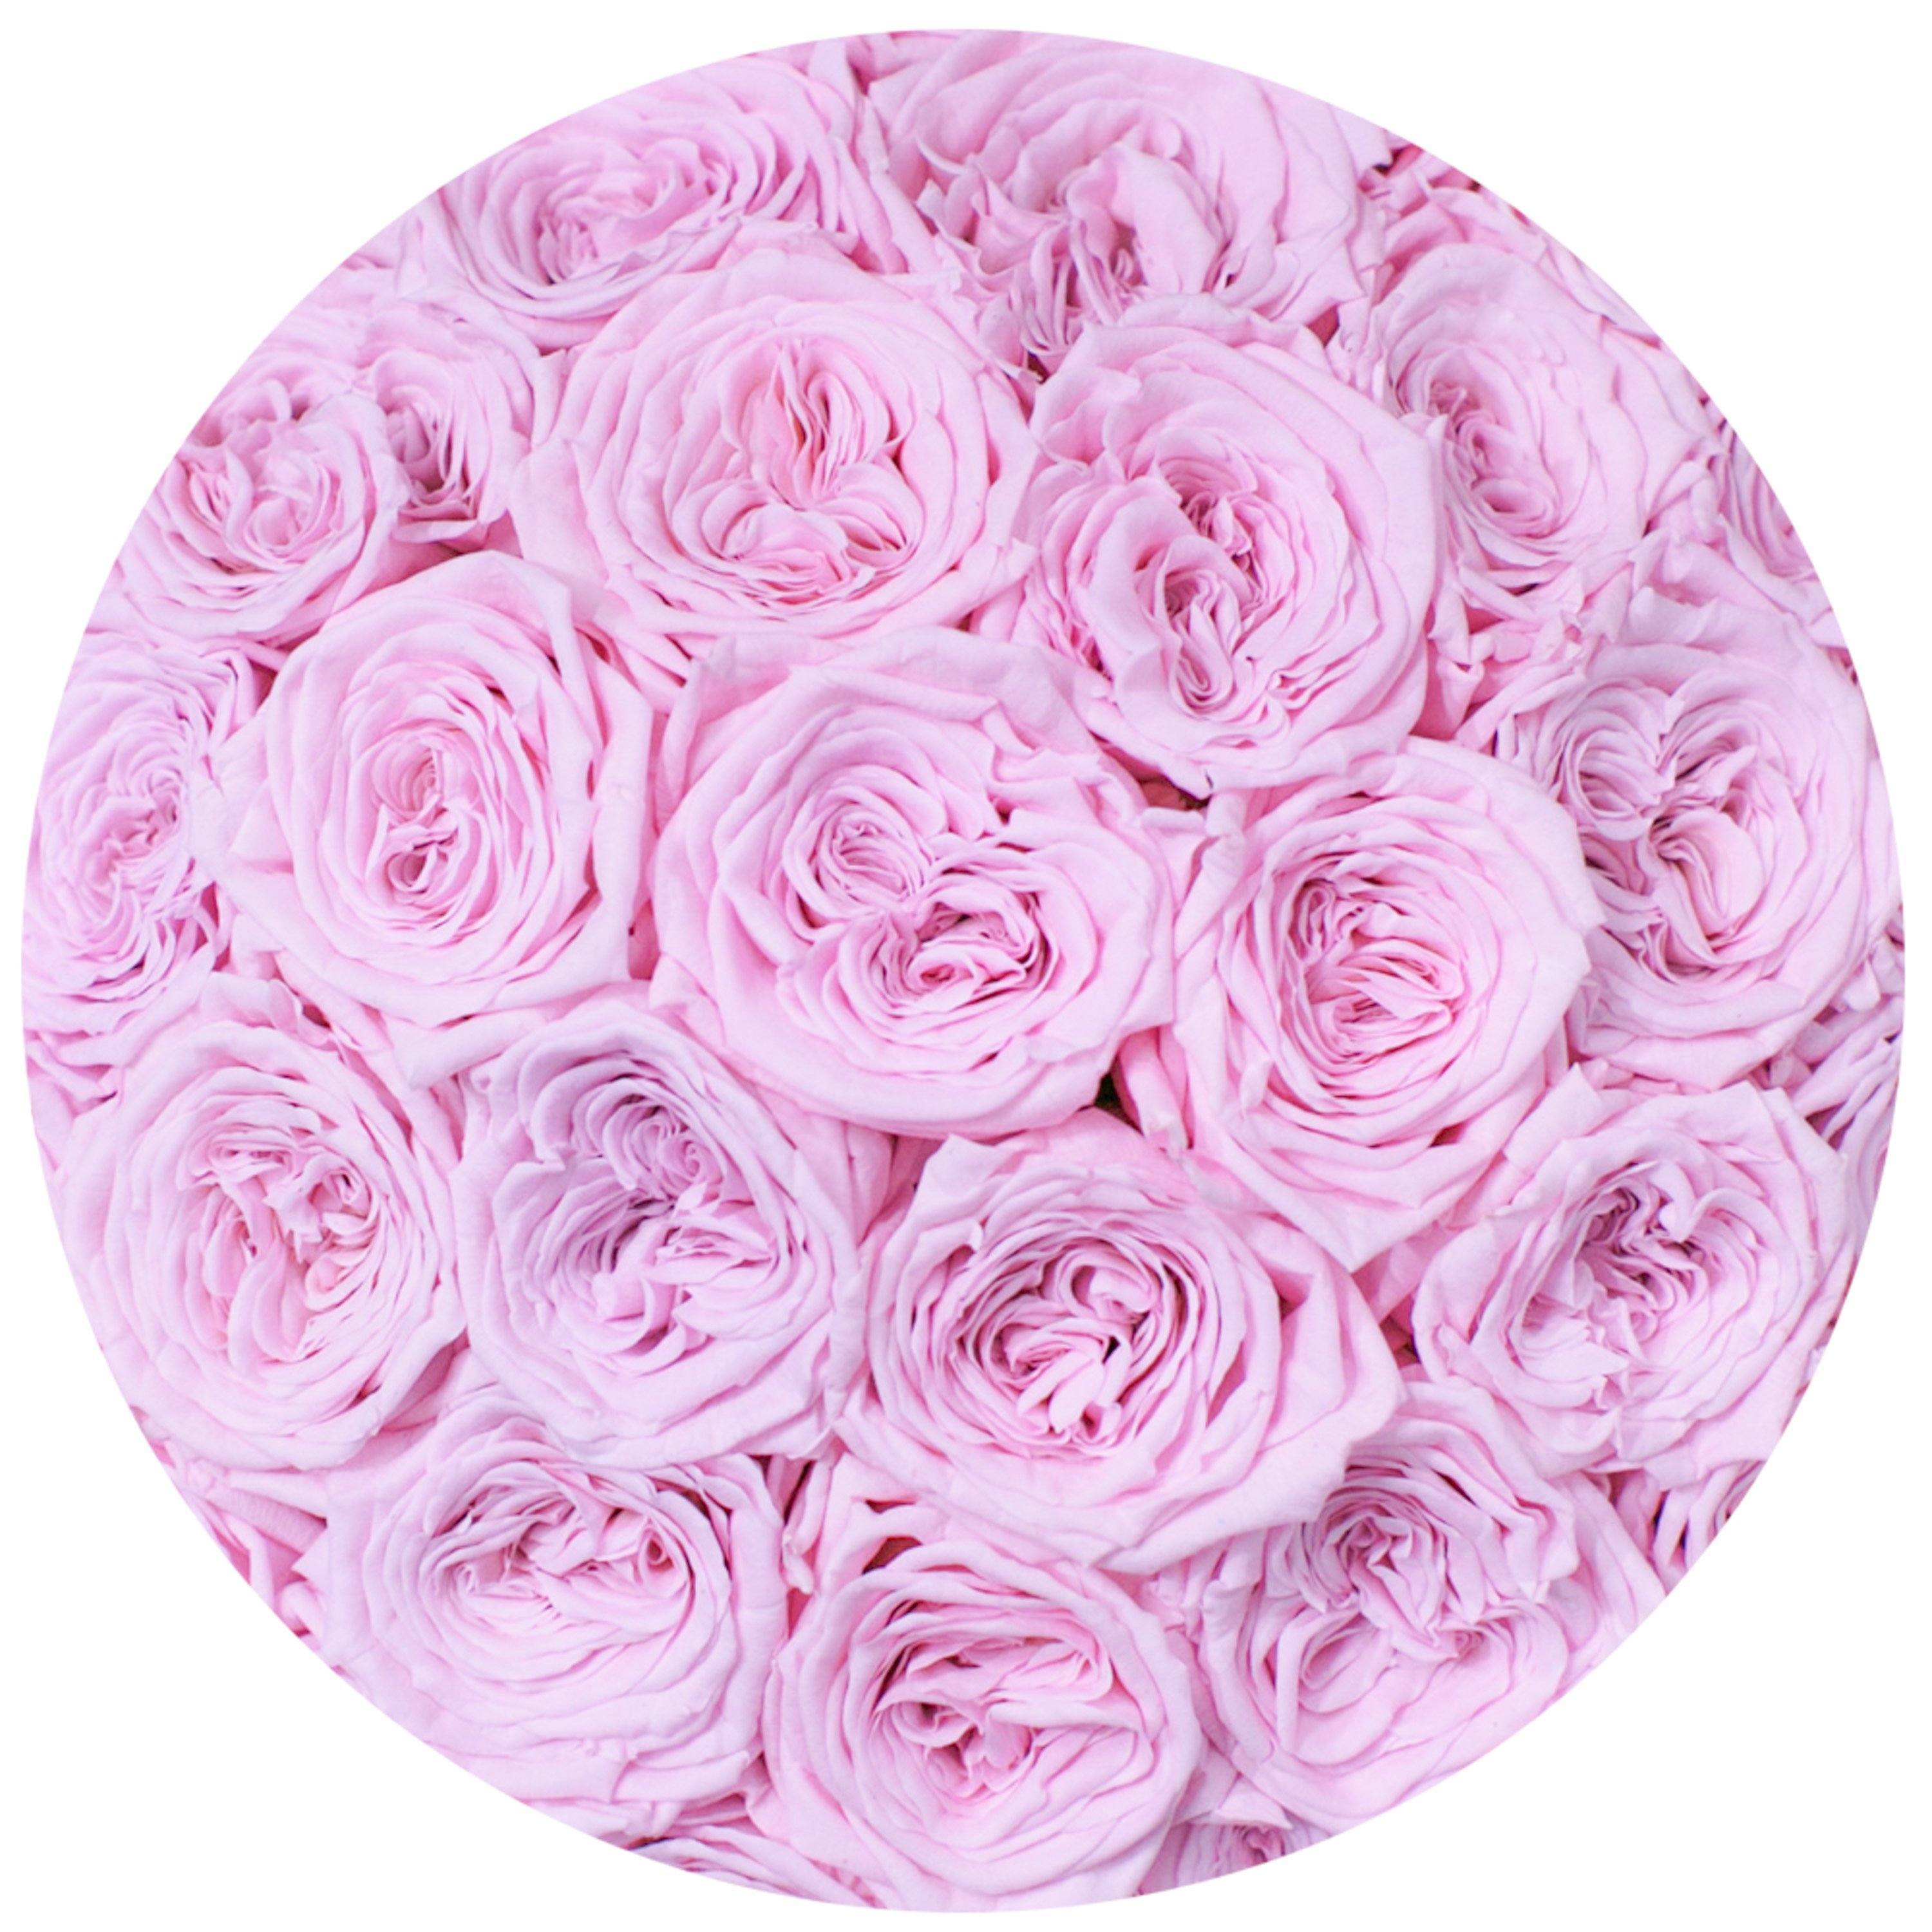 classic round box - white - light-pink GARDEN roses eternity garden roses - the million roses